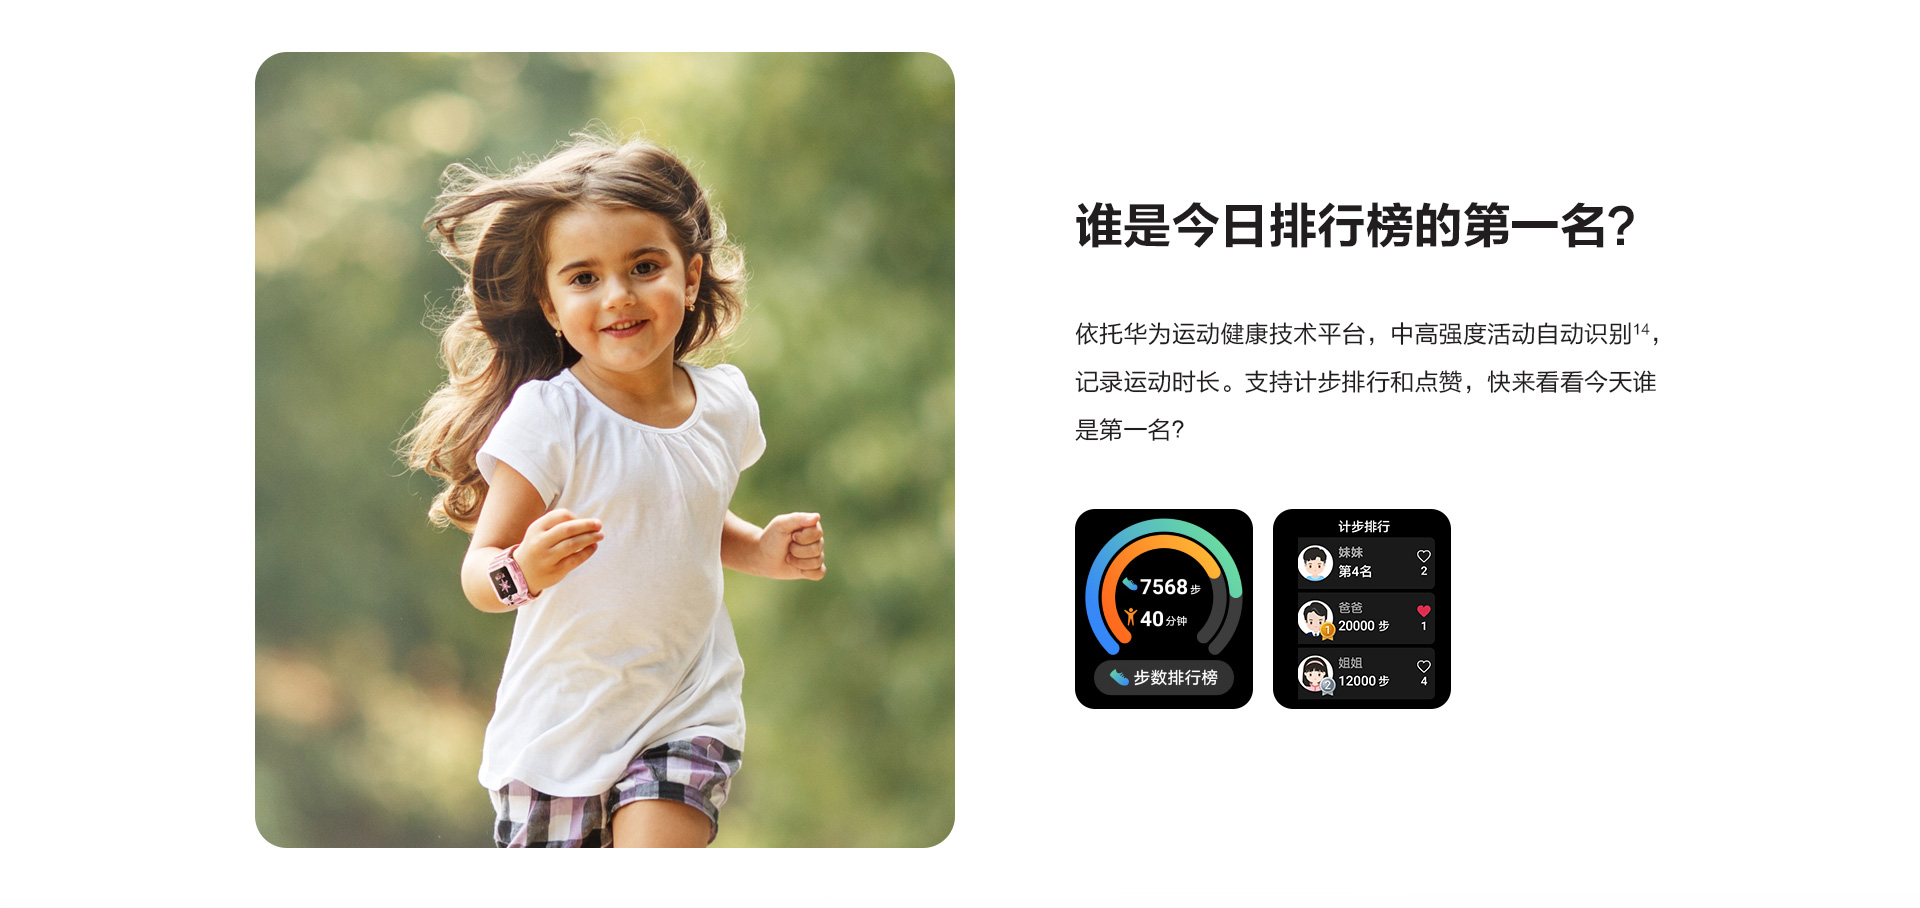 1398元起华为公司儿童智能手表4C 公布预购